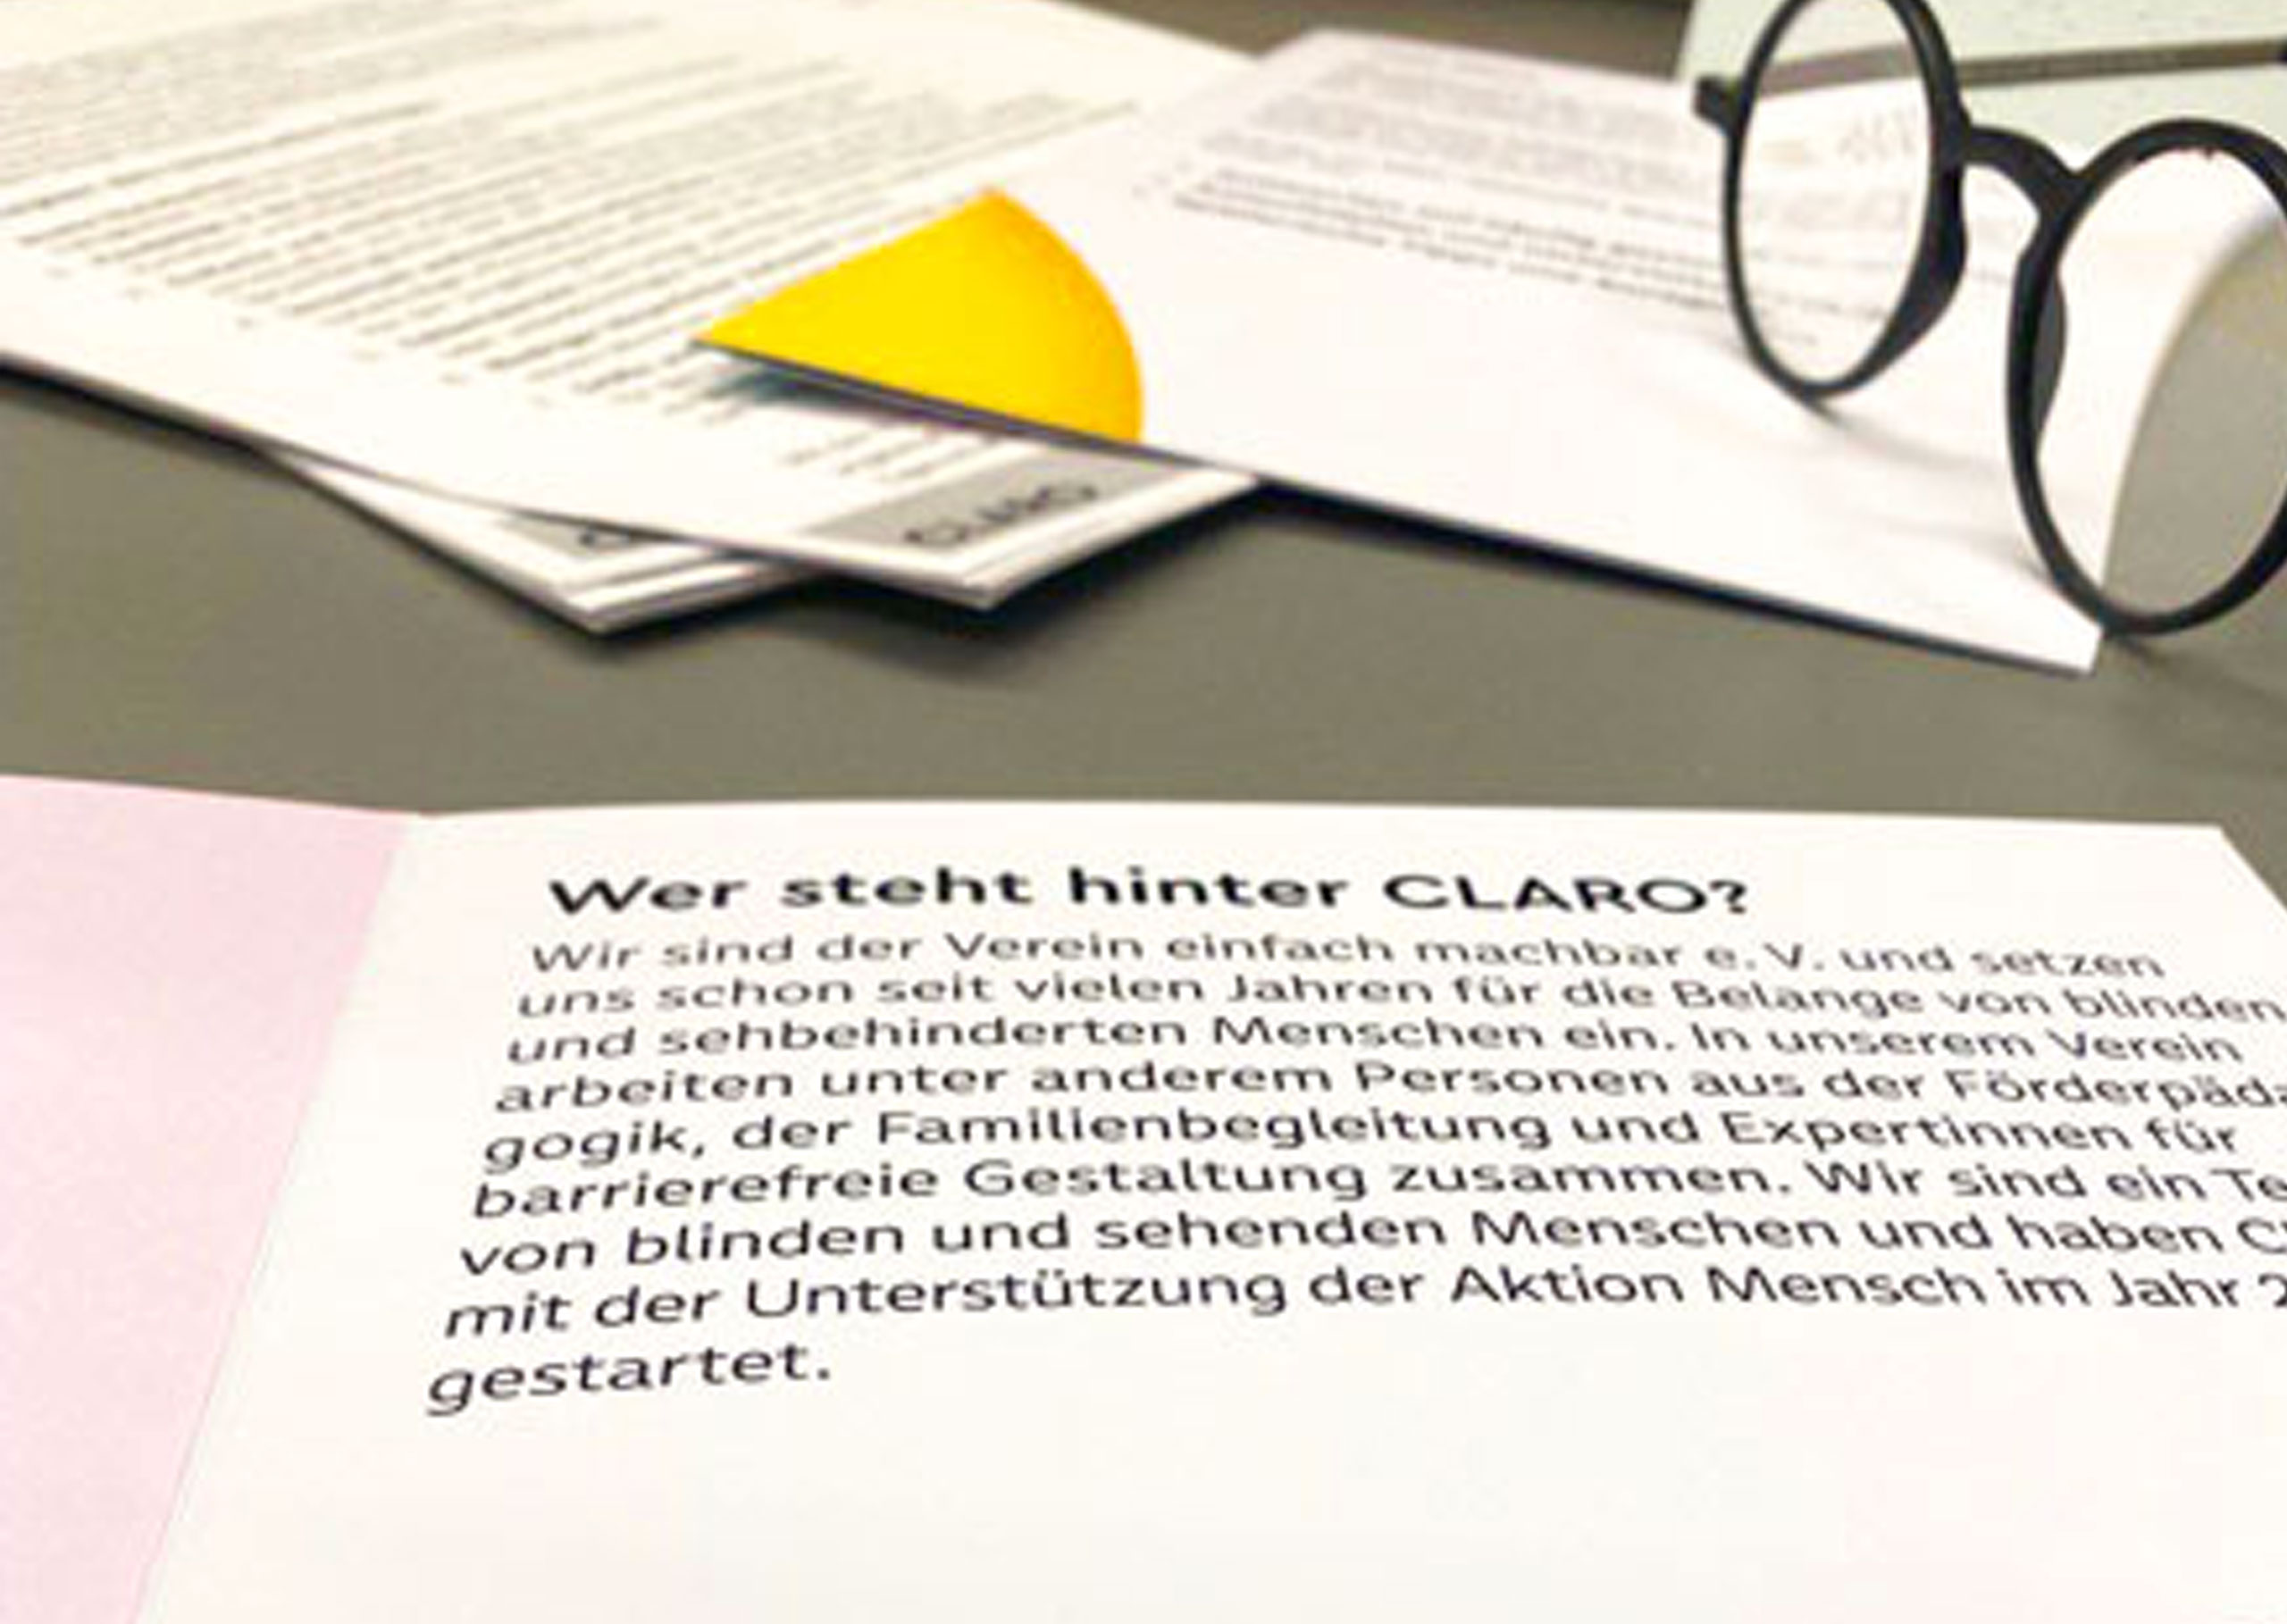 Infoflyer zum Projekt CLARO liegt aufgeschlagen auf einem Tisch.